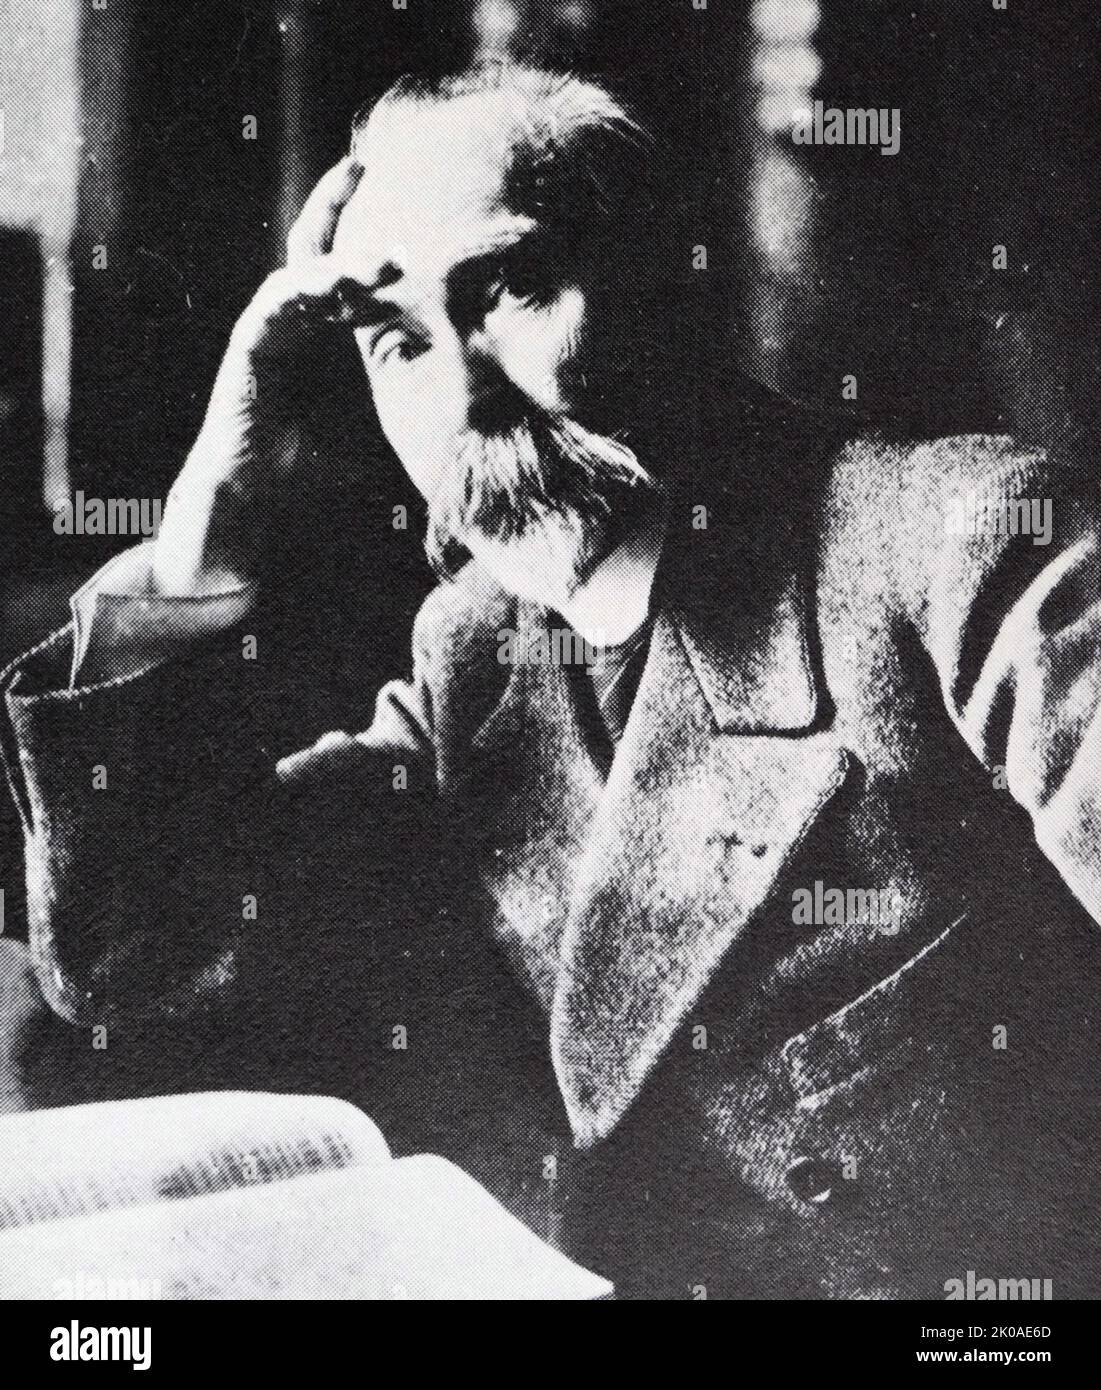 Georgi Walentinowitsch Plechanow (1856. - 30. Mai 1918) Russischer Revolutionär, Philosoph und marxistischer Theoretiker. Er war Gründer der sozialdemokratischen Bewegung in Russland und einer der ersten Russen, die sich als Marxist identifizierte. Angesichts politischer Verfolgung emigrierte Plechanow 1880 in die Schweiz, wo er seine politischen Aktivitäten fortsetzte, um das zaristische Regime in Russland zu stürzen. Plechanow ist bekannt als der "Vater des russischen Marxismus" Stockfoto